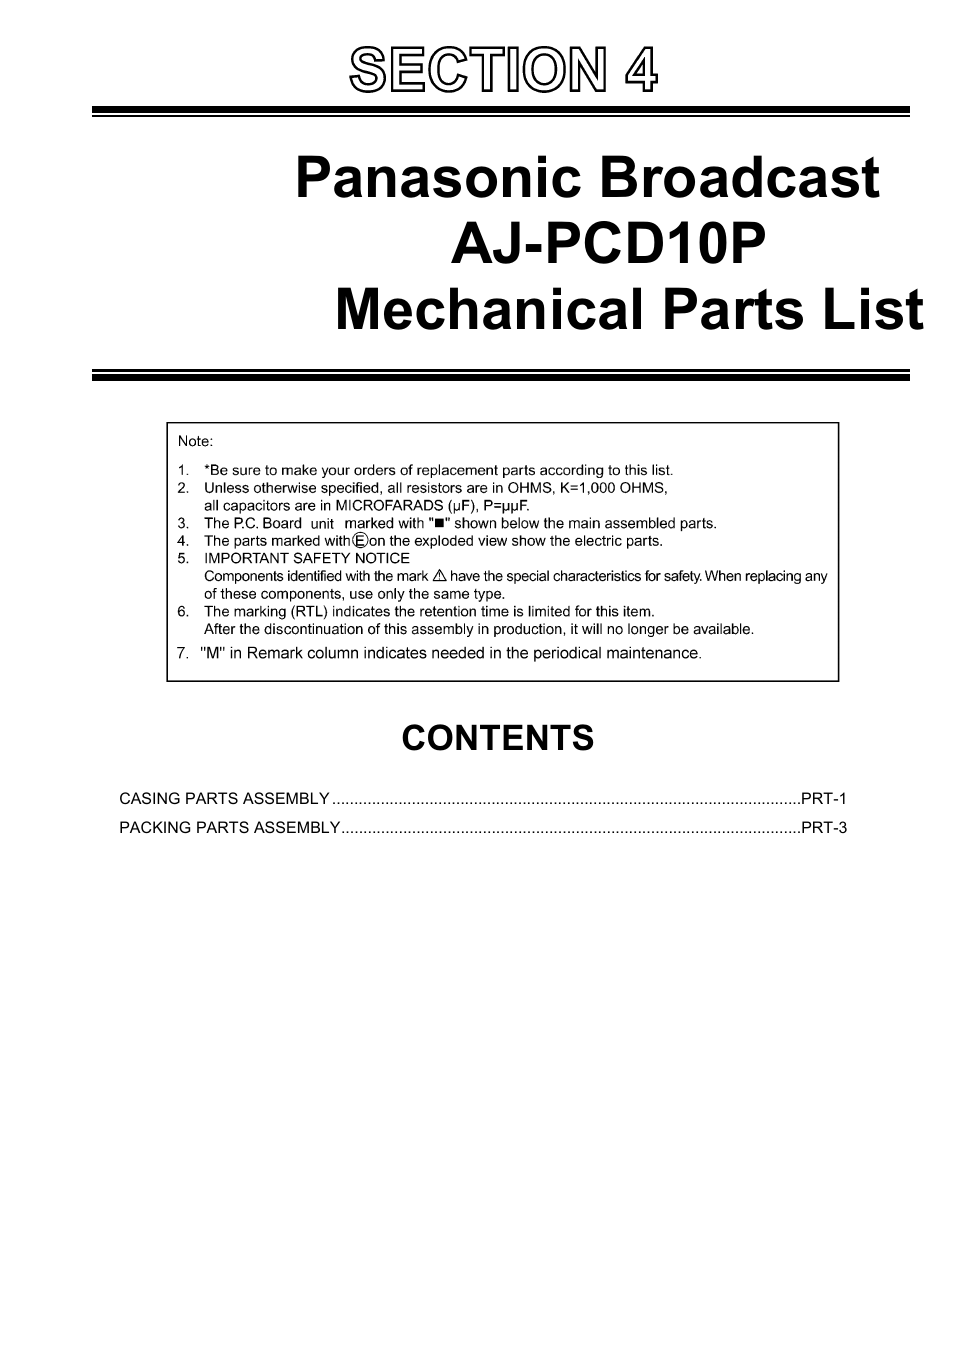 AJ-PCD10P